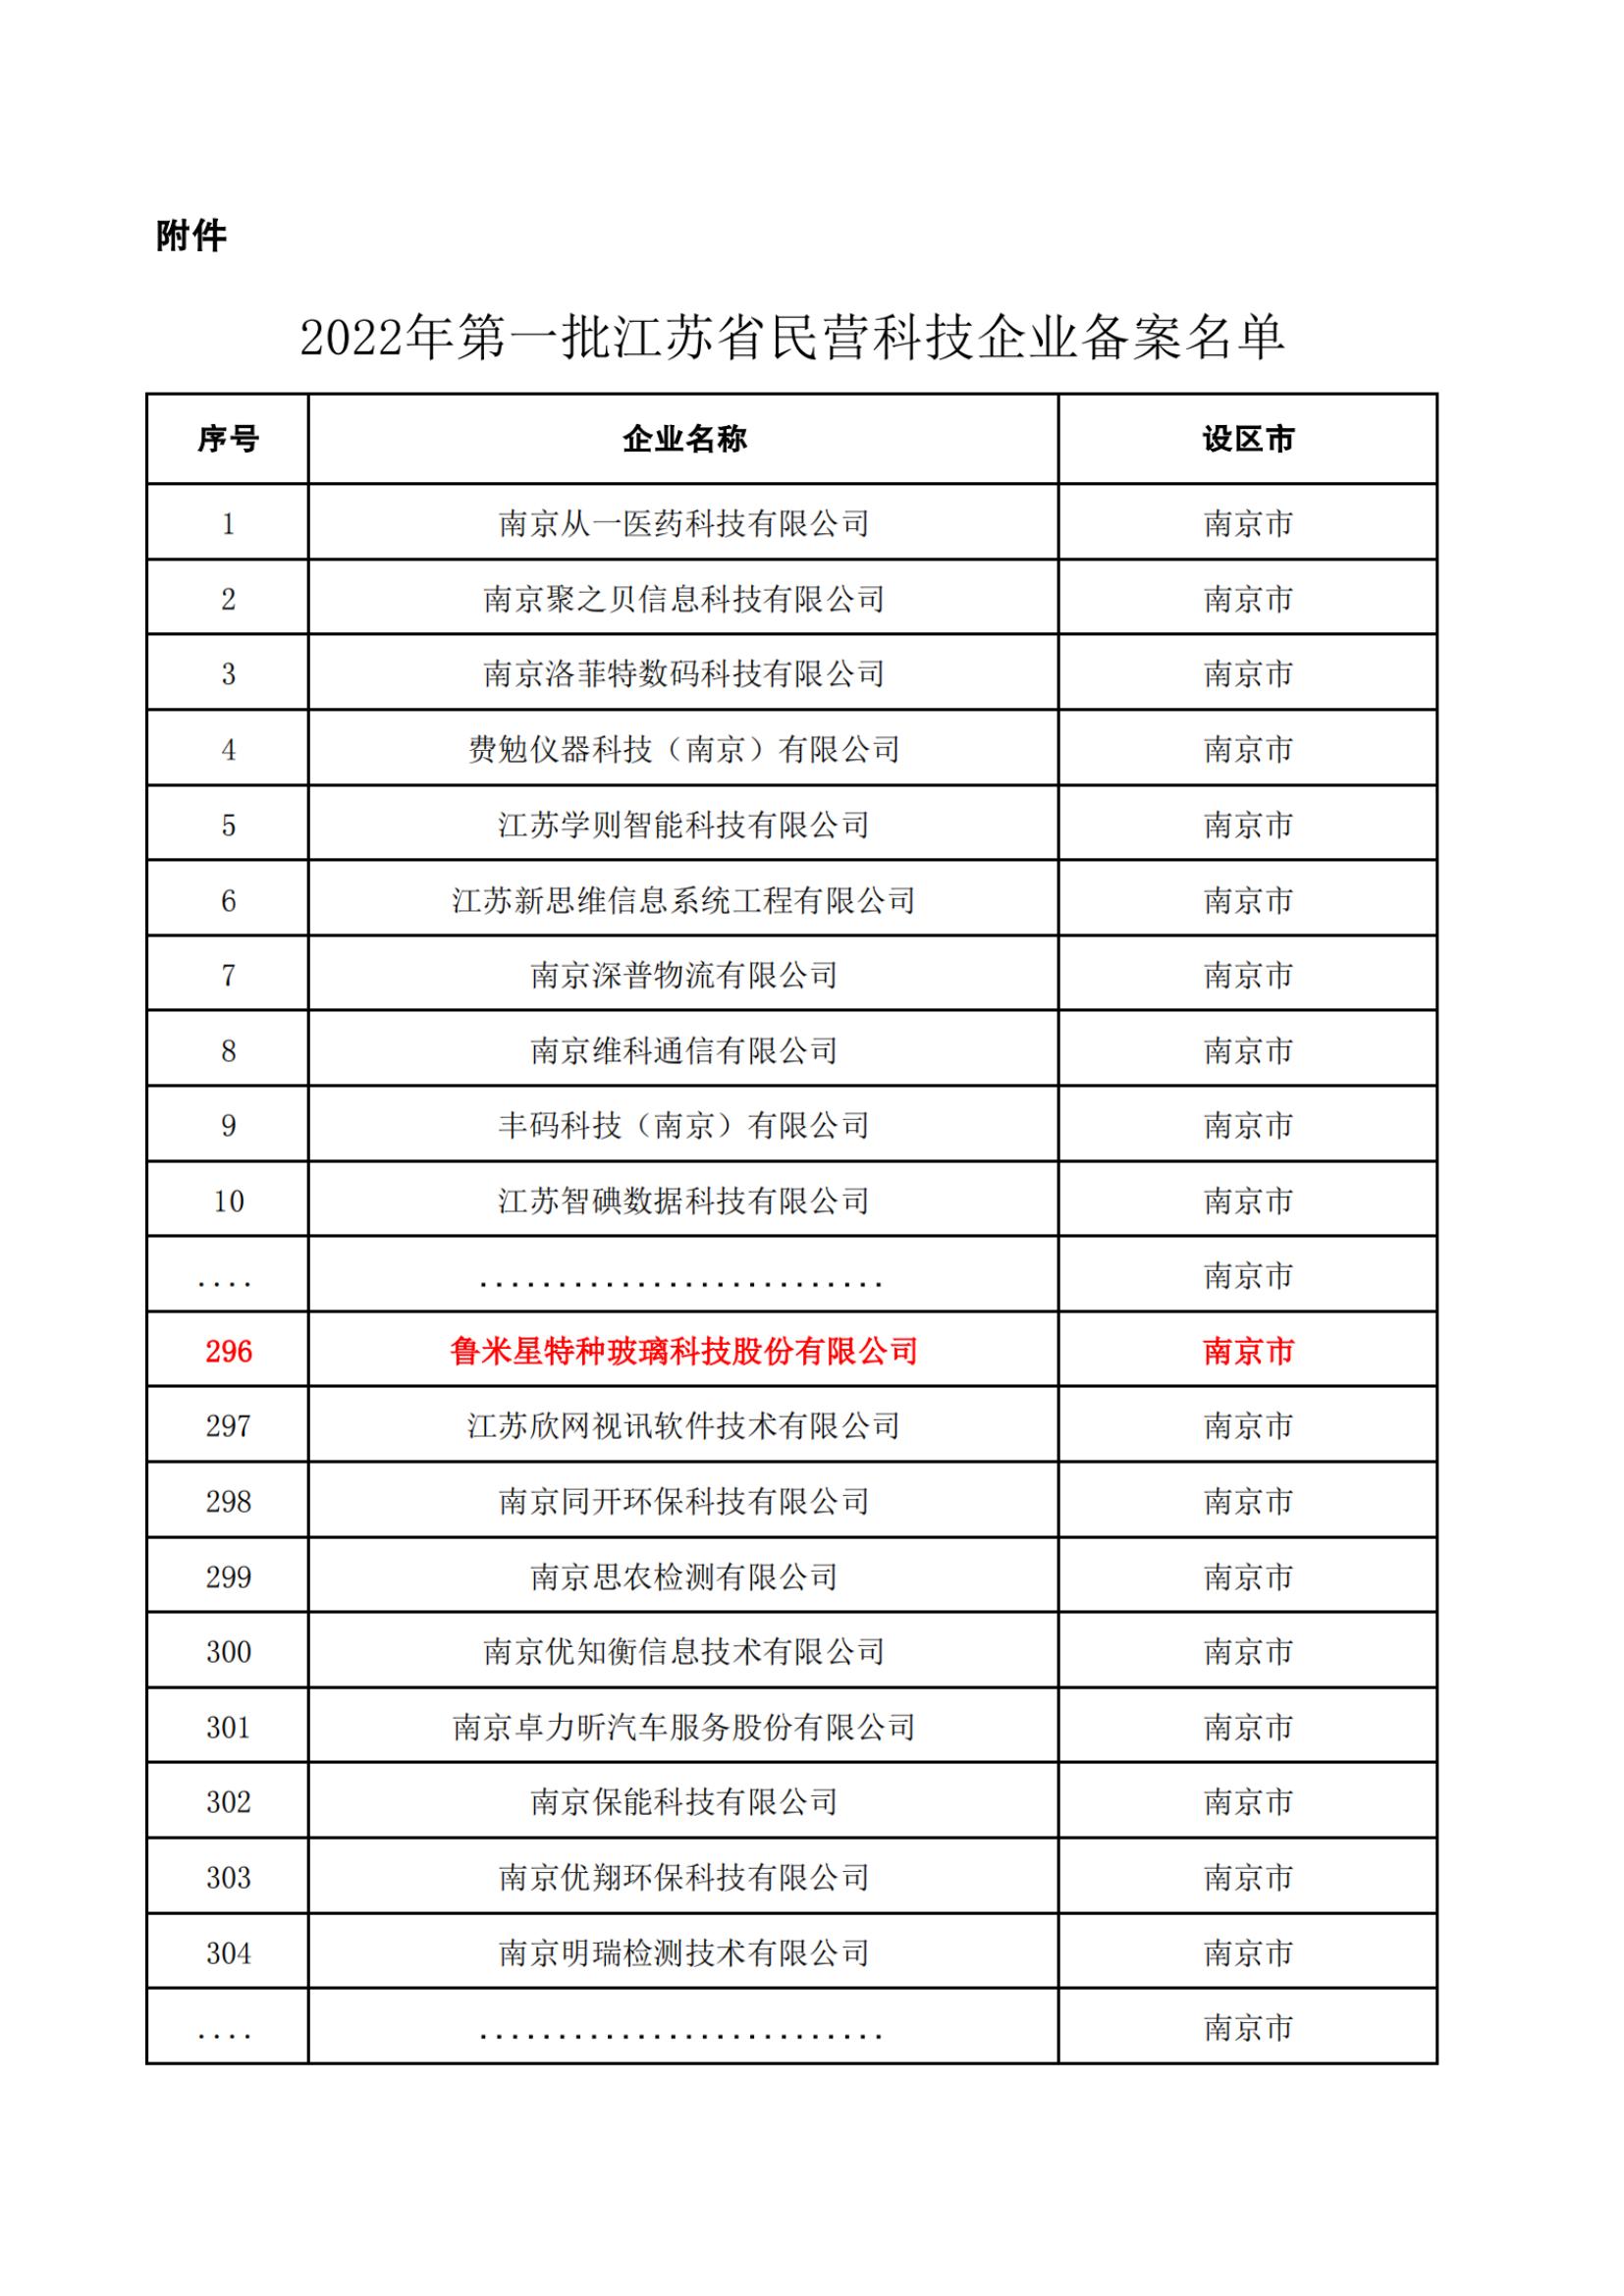 鲁米星通过“2022年第一批江苏省民营科技企业公示名单”